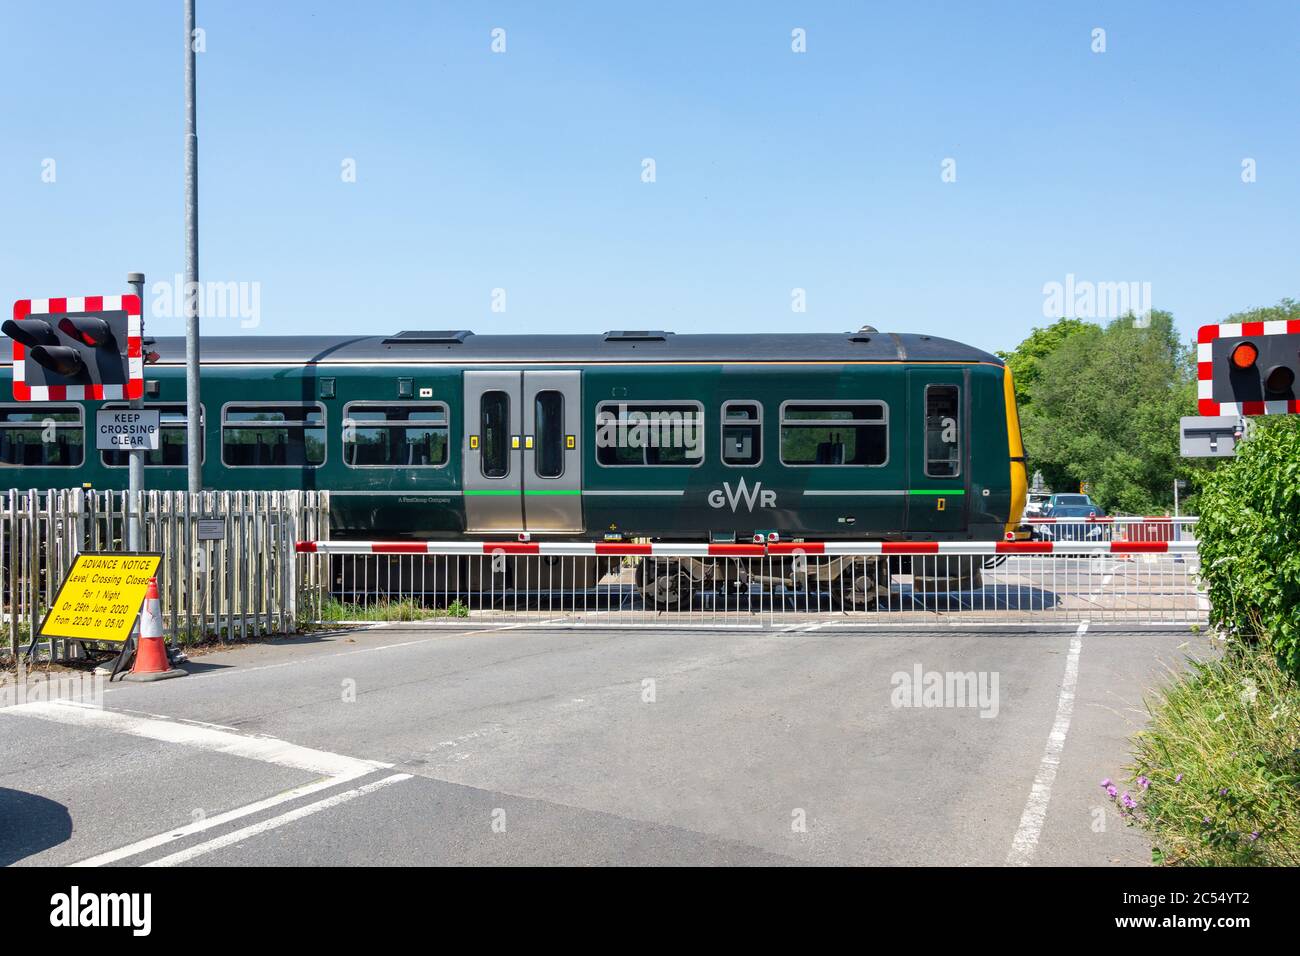 TRAIN GWR passant au croisement de niveau de la gare de Kintbury, Station Road, , Kintbury, Berkshire, Angleterre, Royaume-Uni Banque D'Images